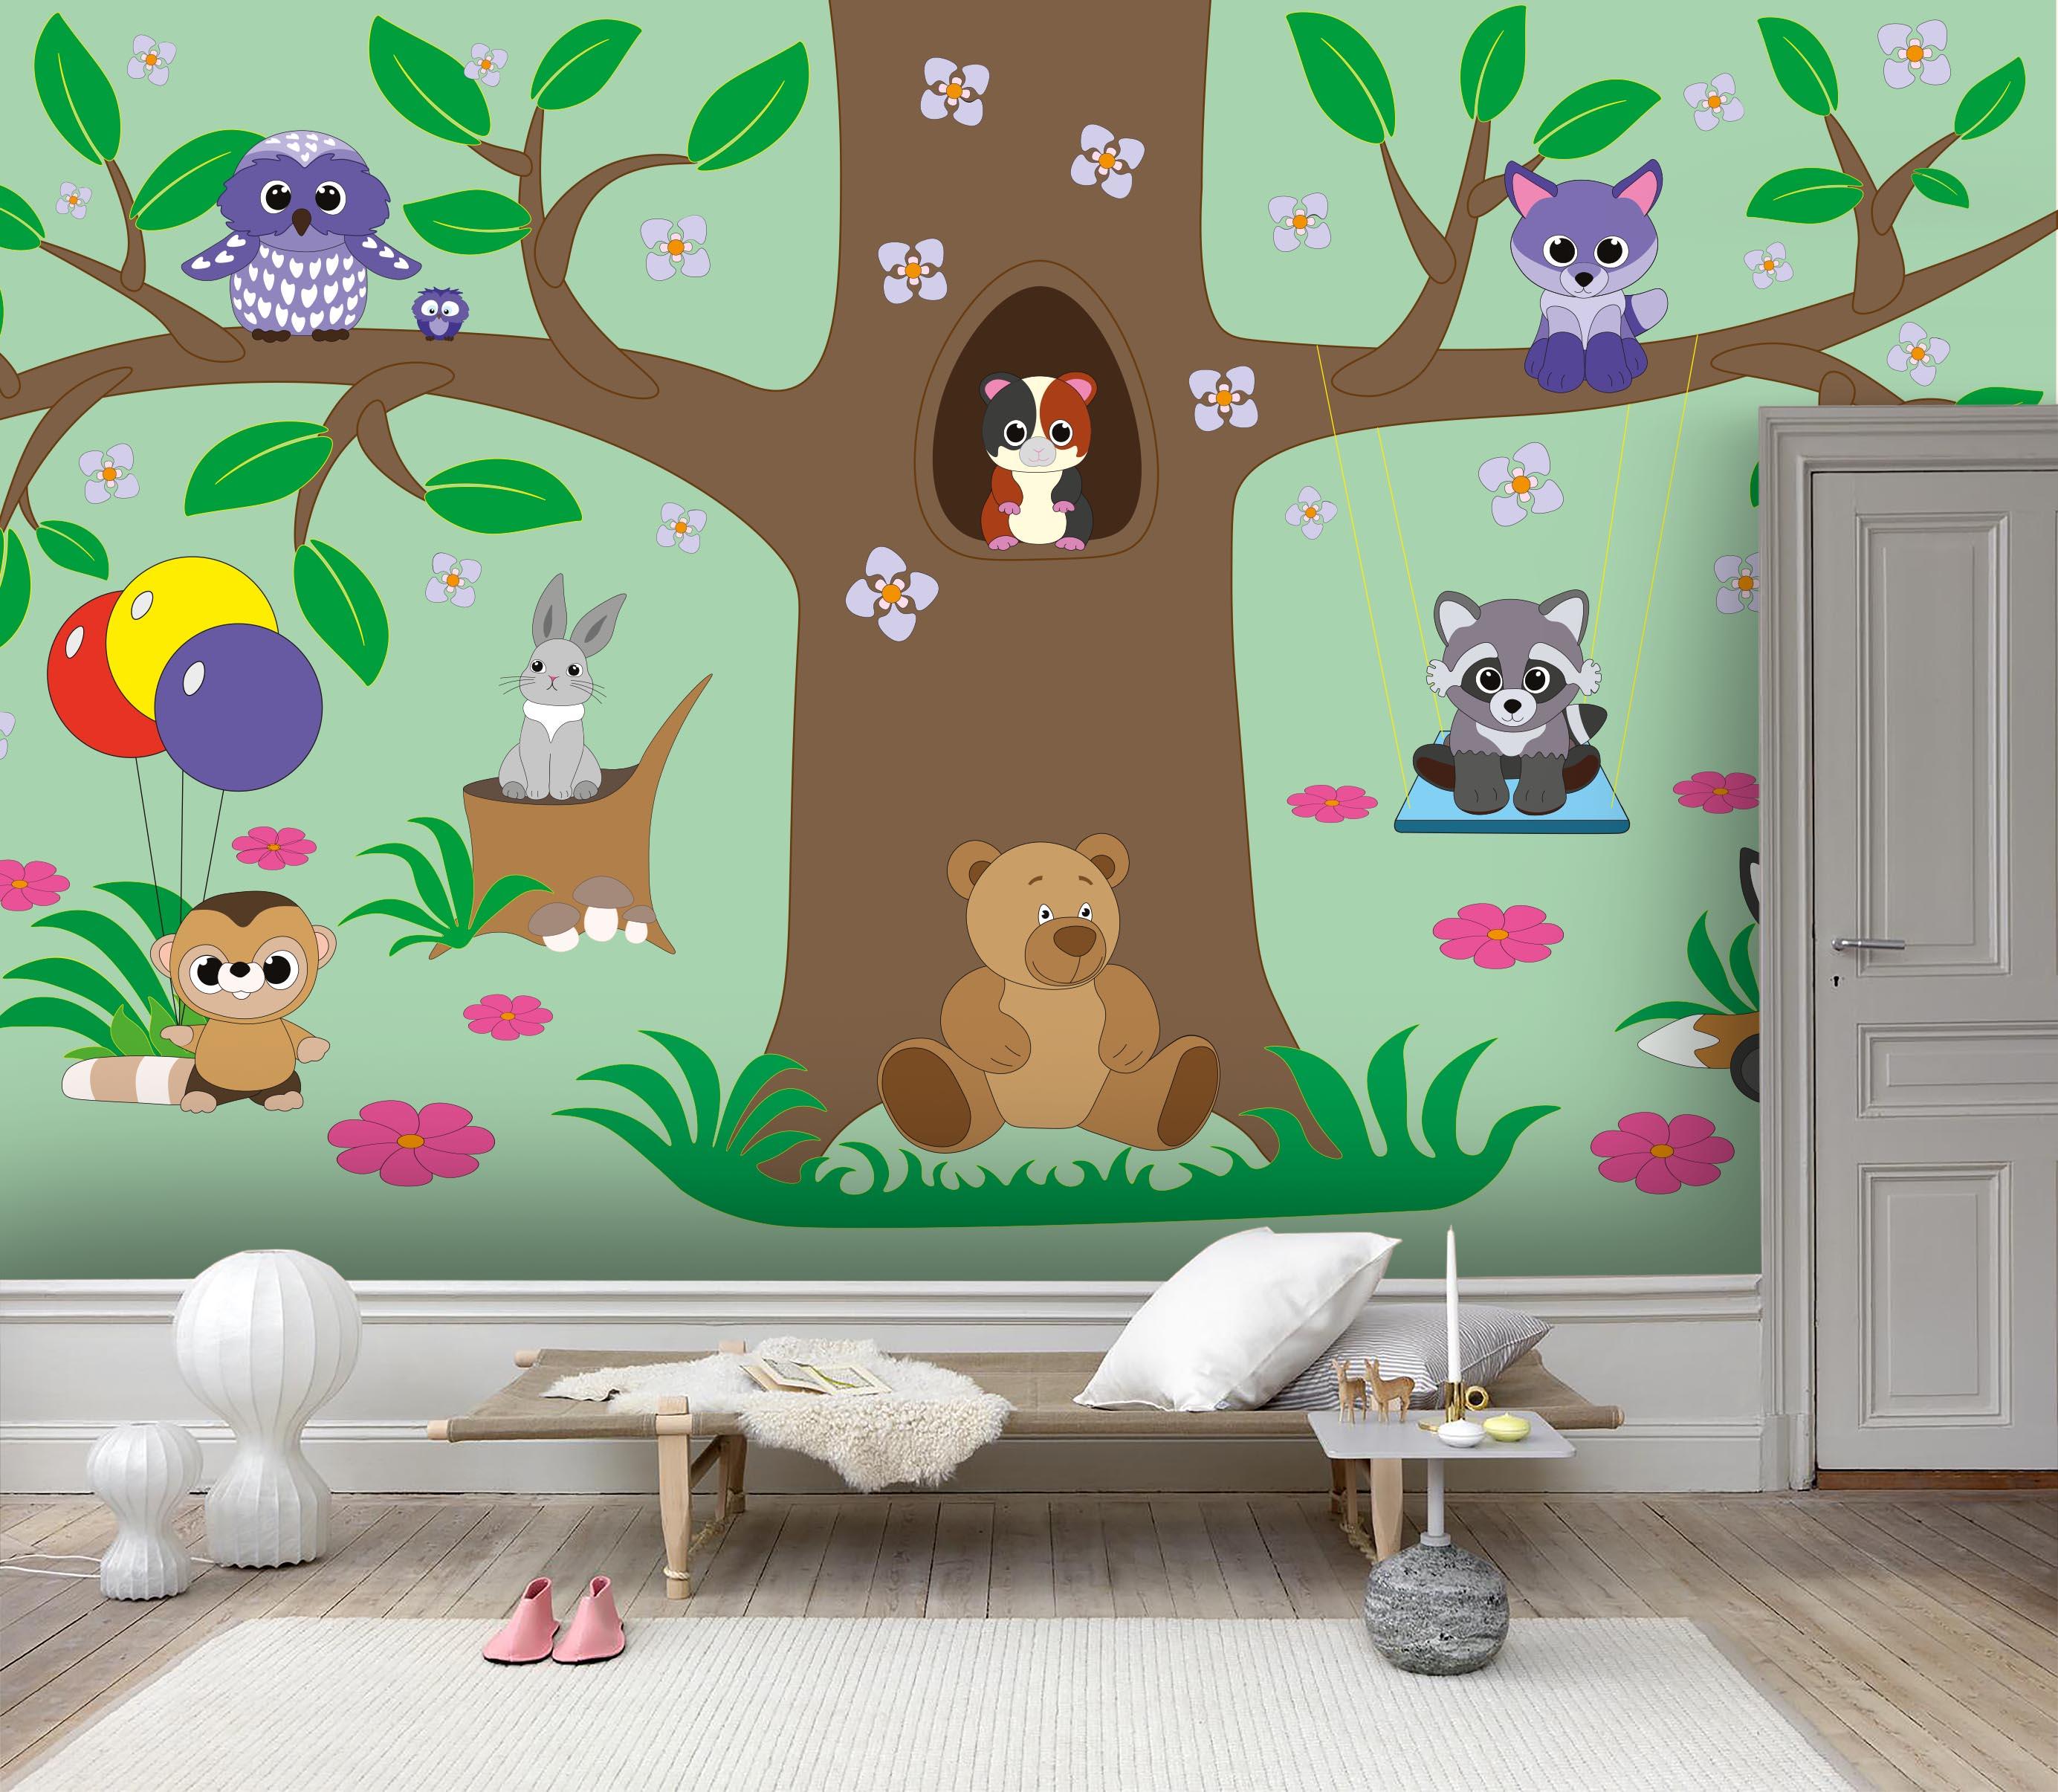 3D Cartoon Animal Forest Wall Mural Wallpaper 33- Jess Art Decoration